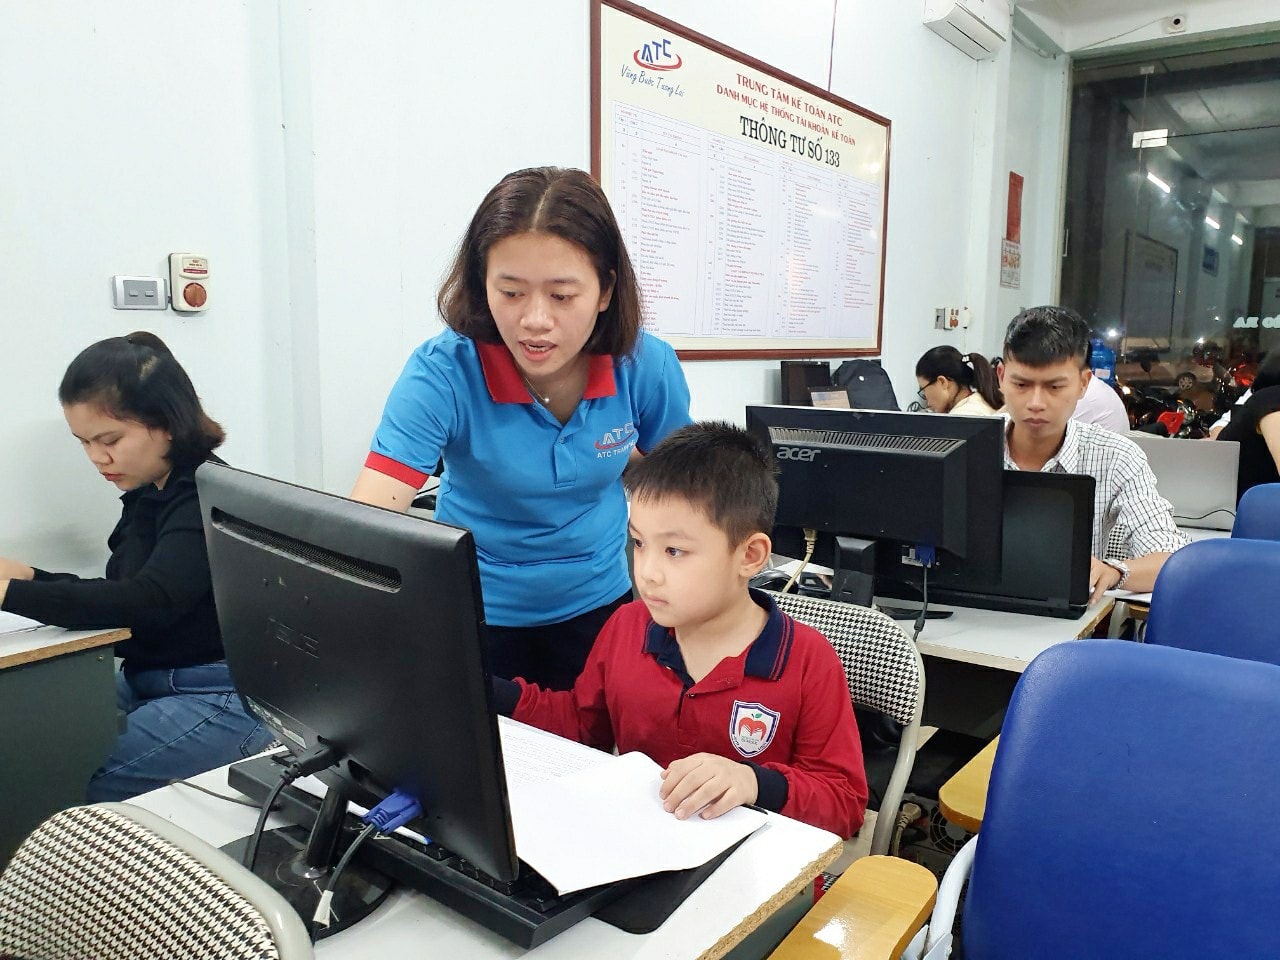 Khóa tin học văn phòng dành cho trẻ em tại Thanh Hóa Là khóa học nền tảng, giúp các bé tiếp thu dễ dàng các kiến thức Tin học chuyên sâu Rèn luyện kỹ năng, sử dụng máy tính hiệu quả Trang bị những kiến thức Tin học thiết thực, ứng dụng thường xuyên trong học tập và cuộc sống